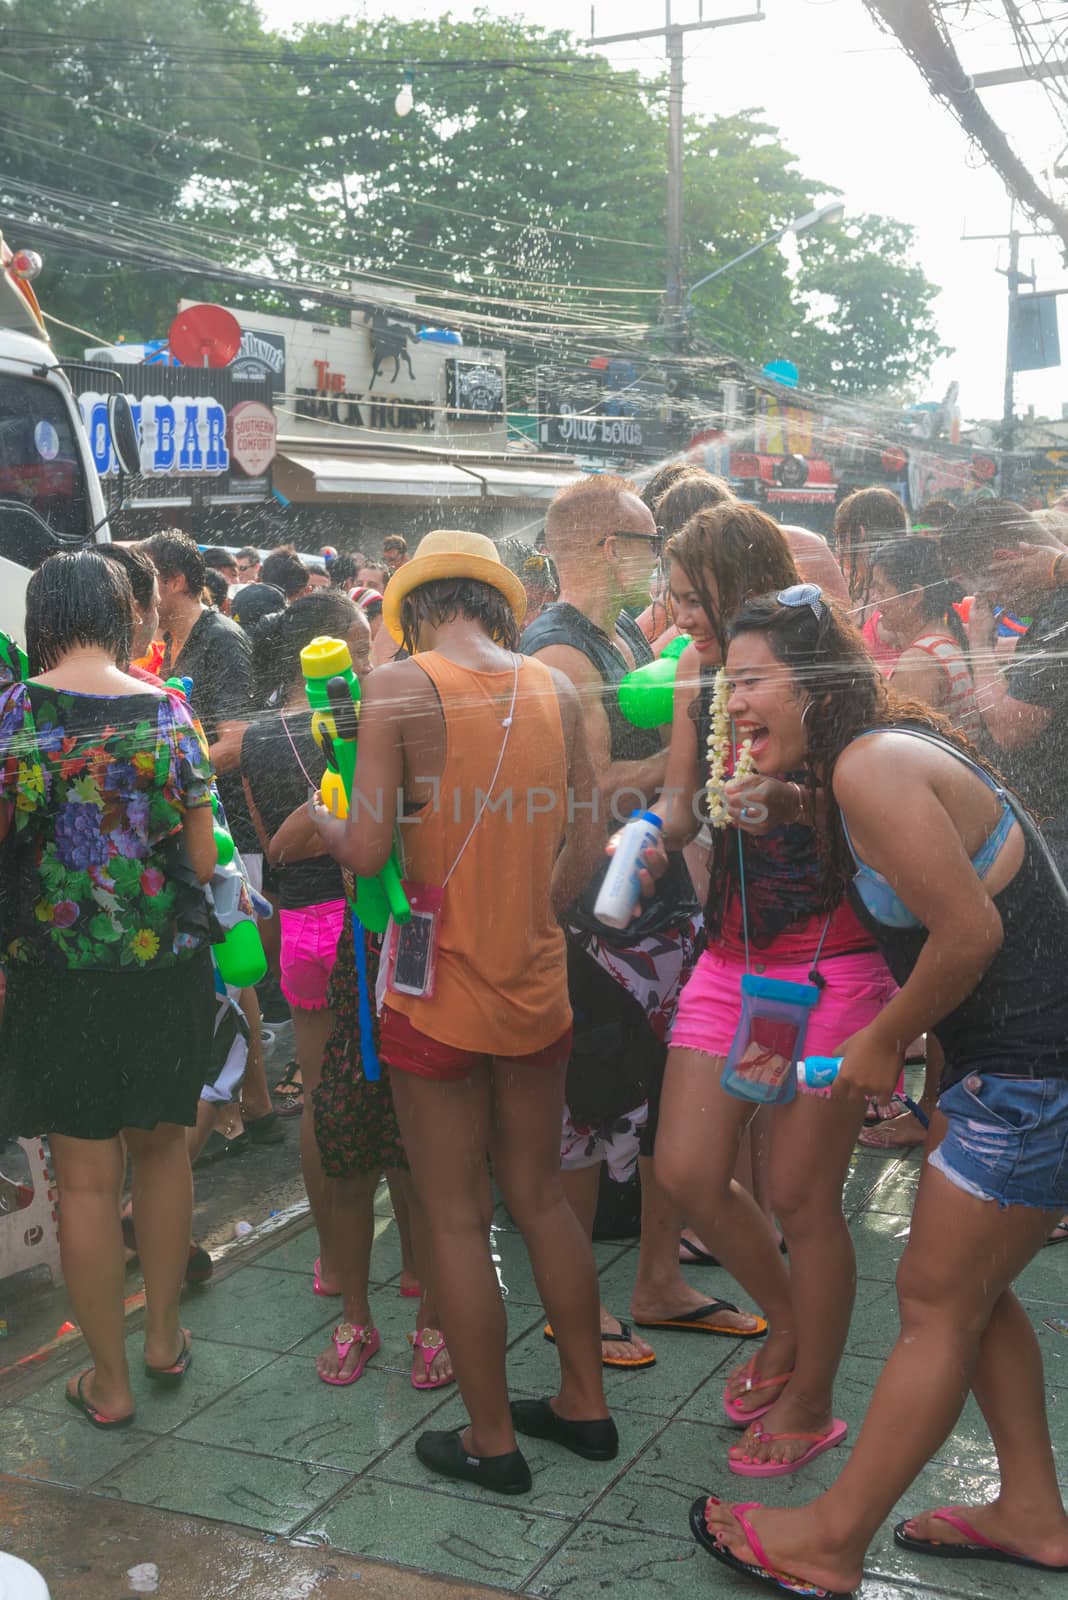 Celebration of Songkran Festival, the Thai New Year on Phuket by iryna_rasko